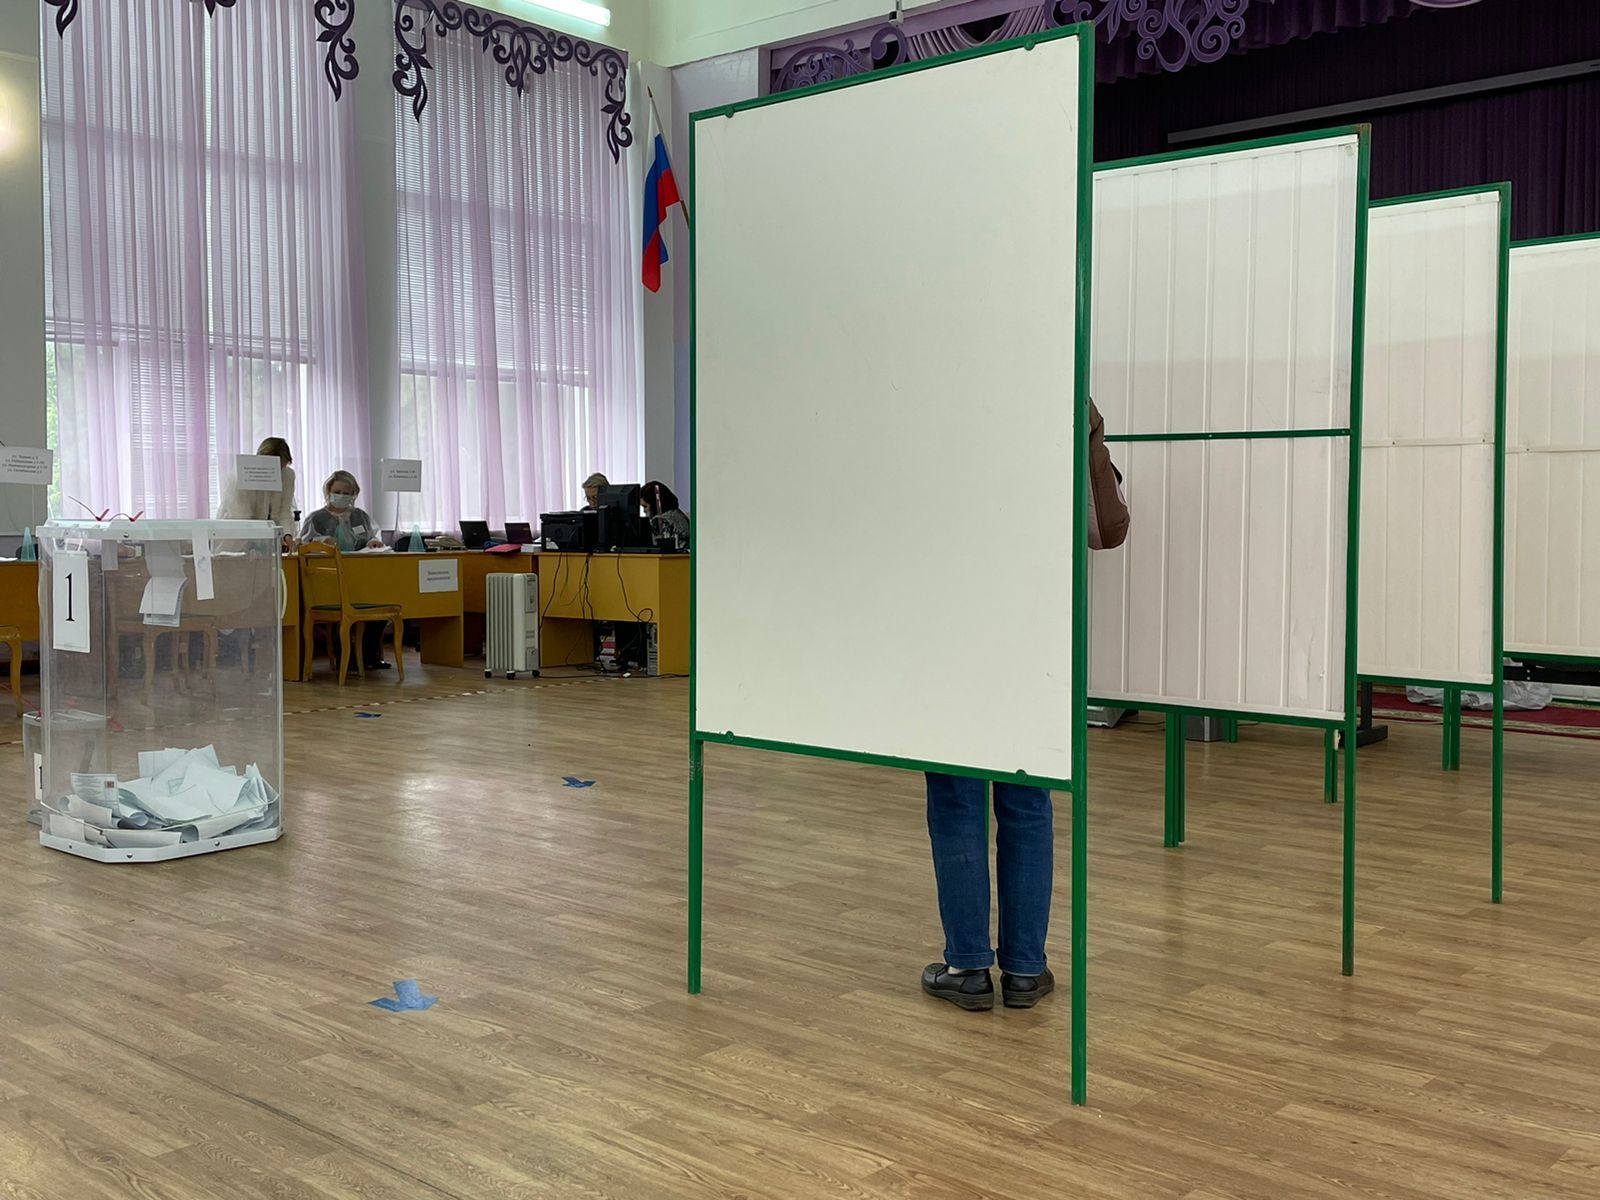 Все избирательные участки в Бугульминском районе открыты для голосования граждан